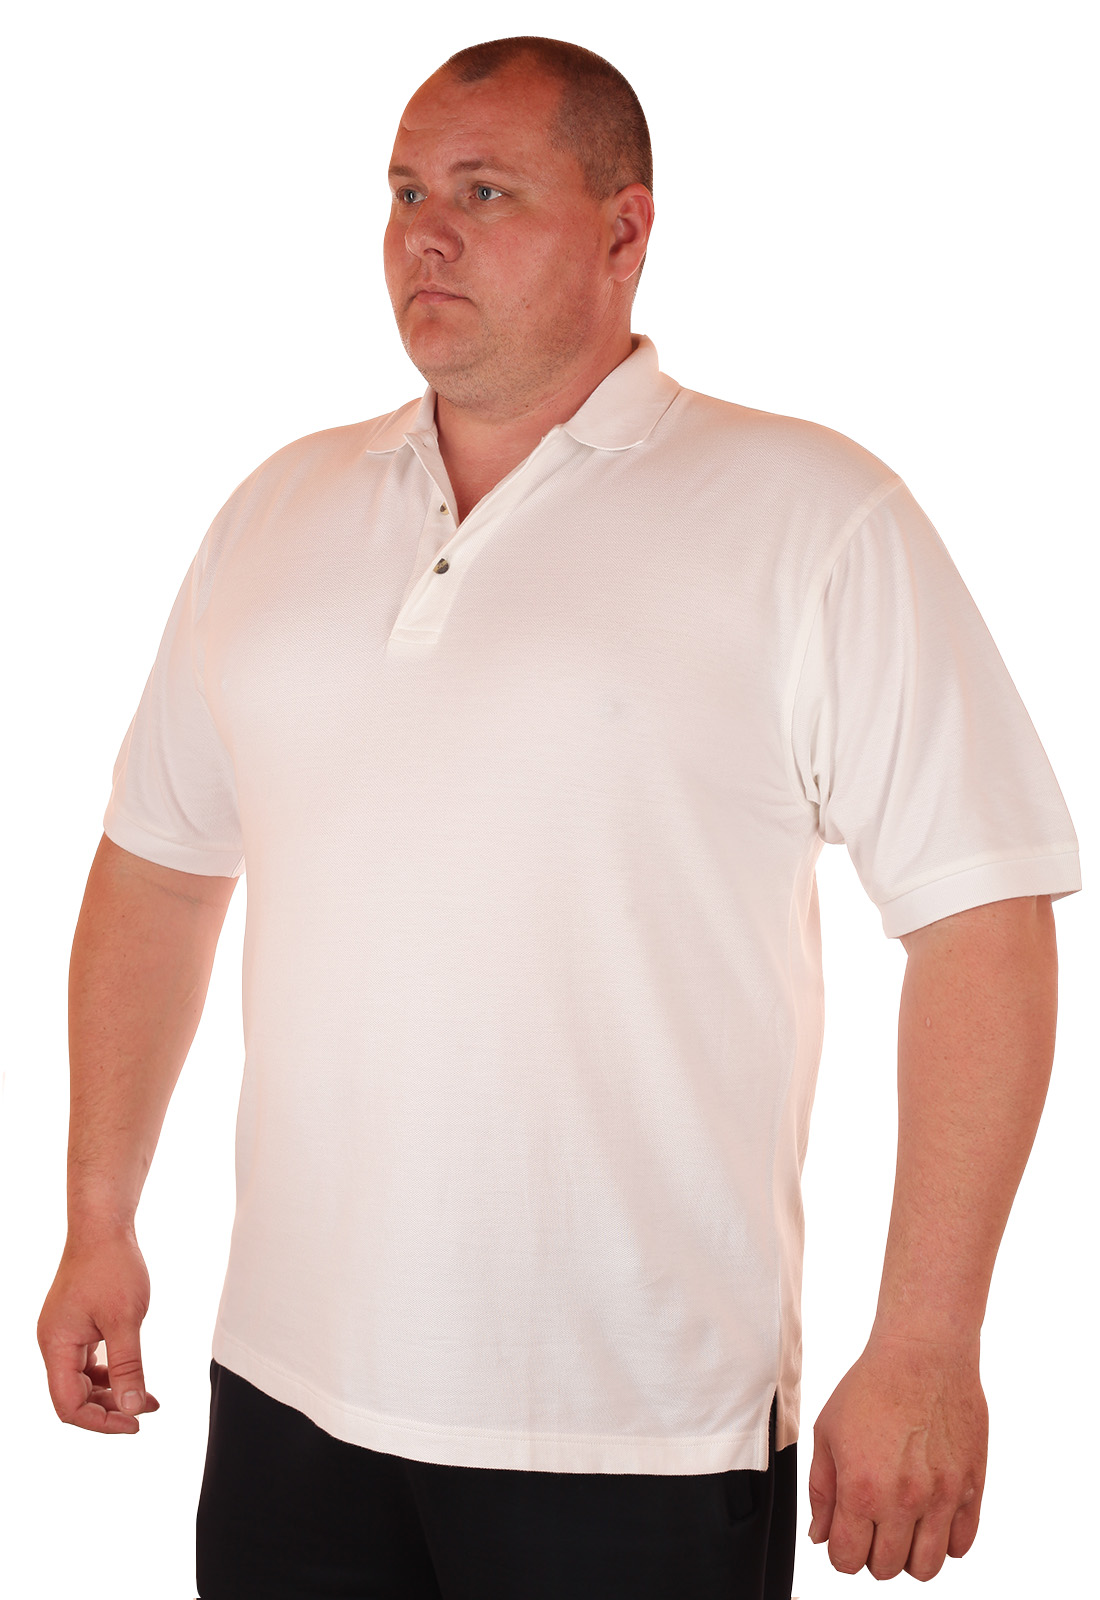 Белая футболка мужская большого размера